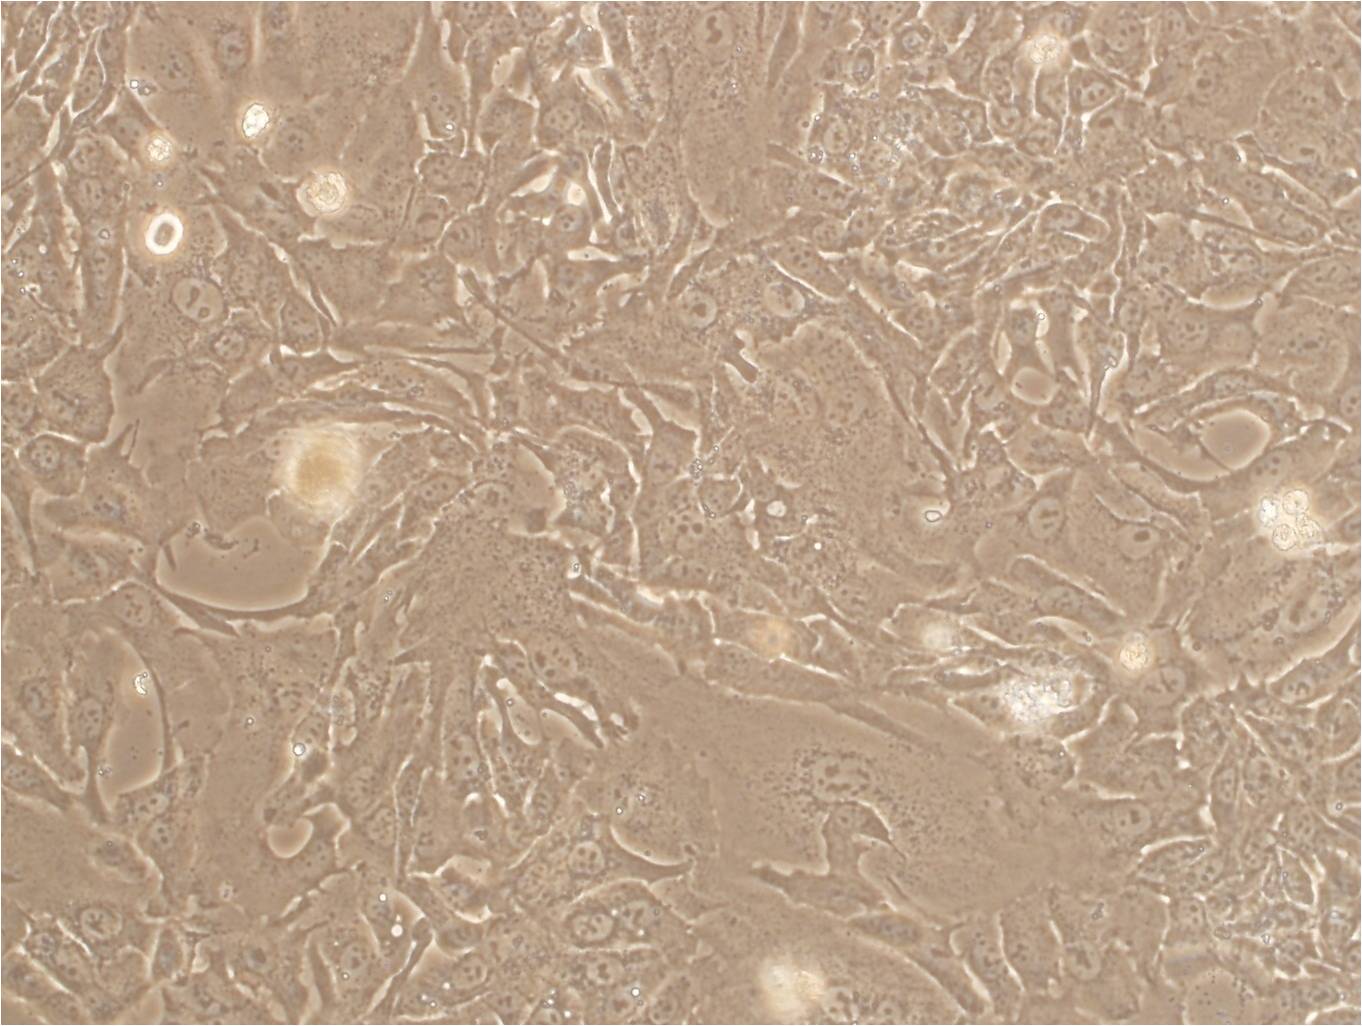 SVG p12 Cells|人星形胶质细胞系